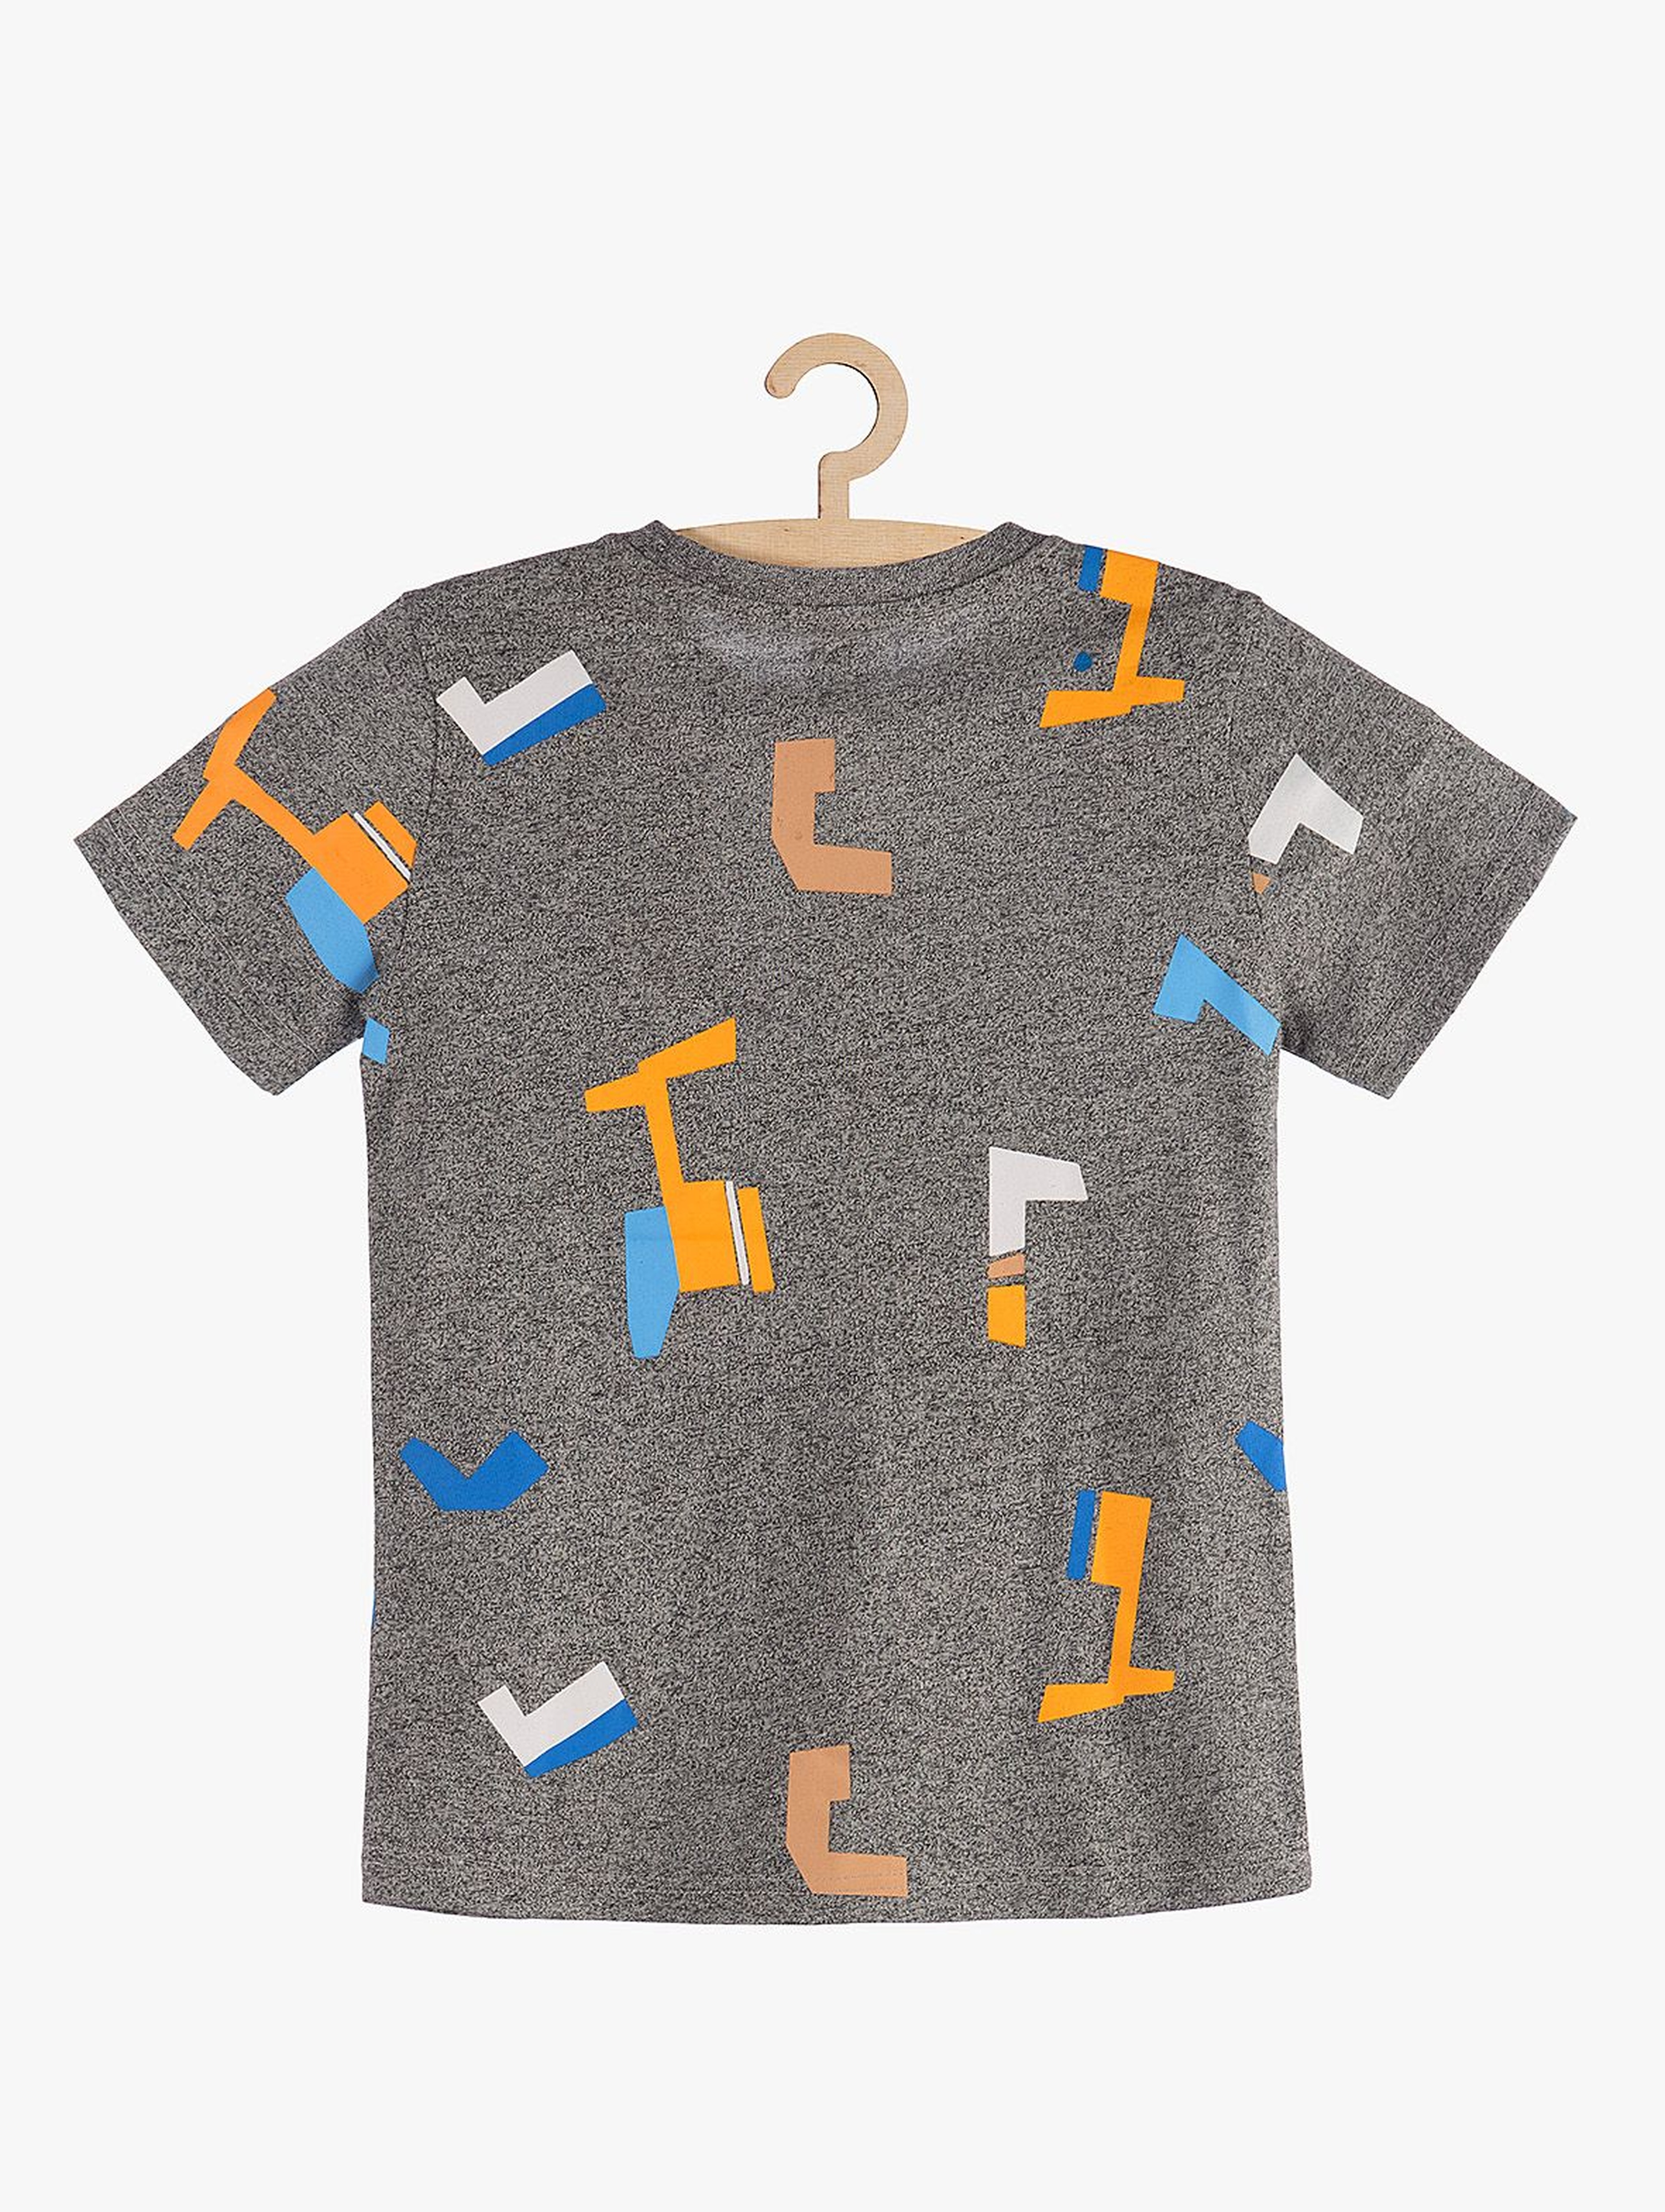 T-shirt chłopięcy szary w geometryczne wzory